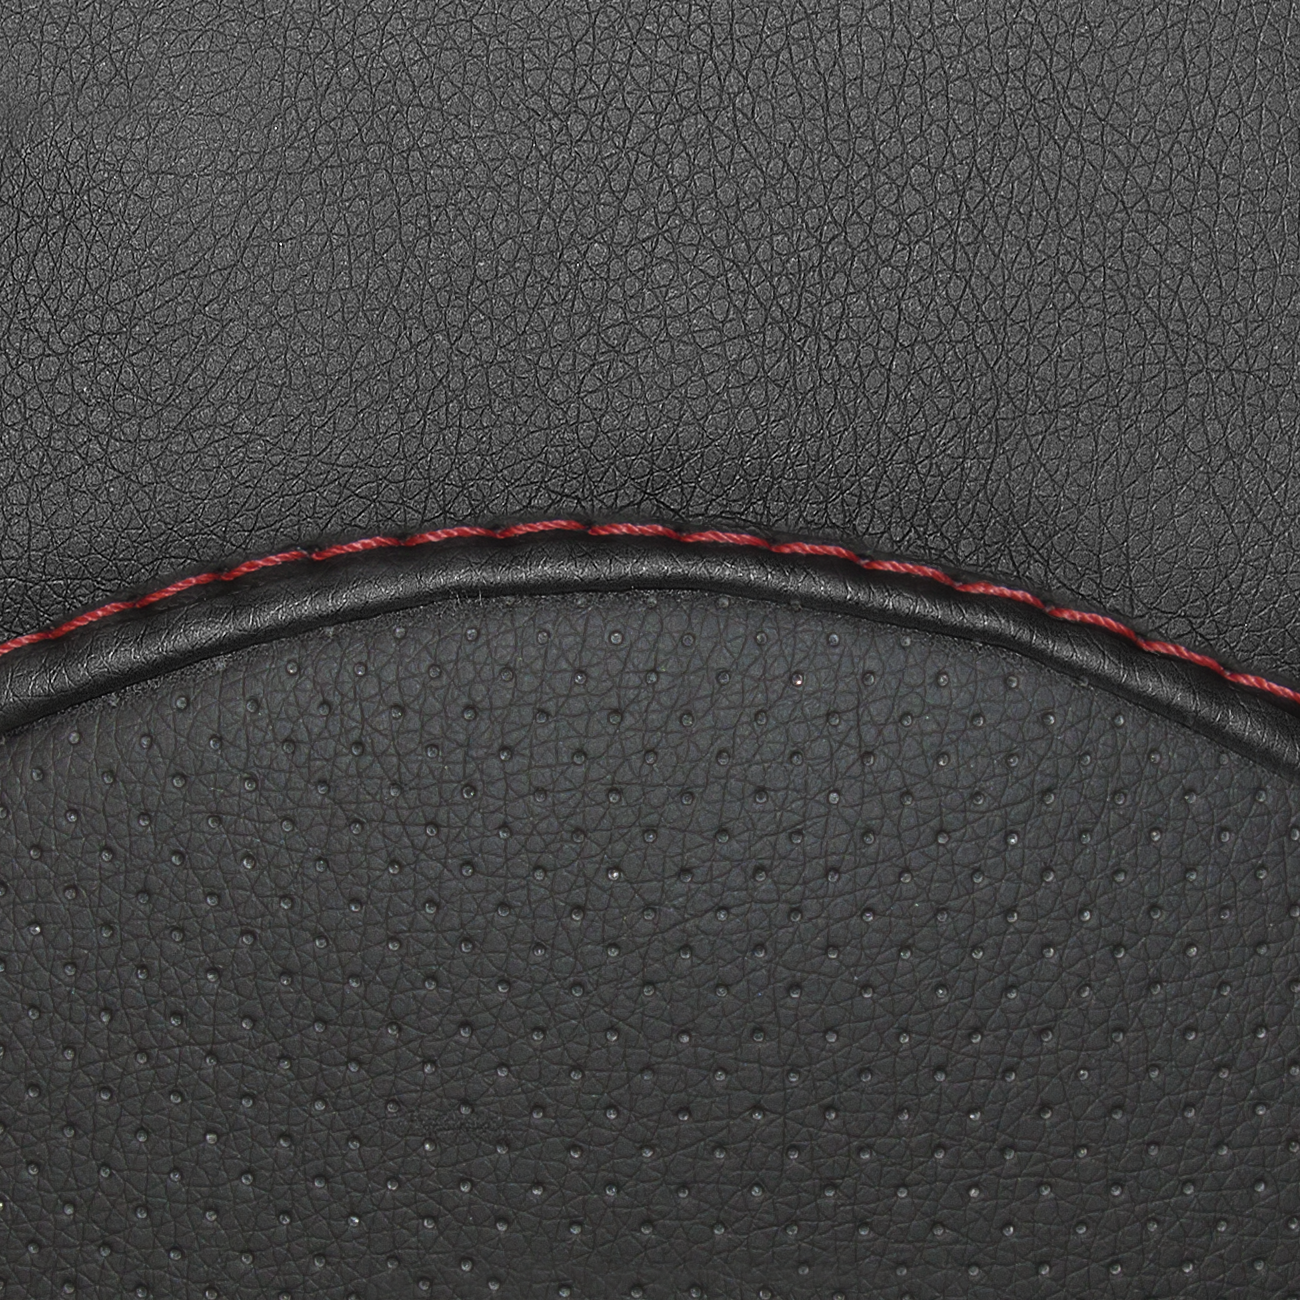 Чехлы в машину PSV для Hyundai Solaris I 2010-2017 г. - седан черный/отстрочка красная, экокожа "Оригинал"